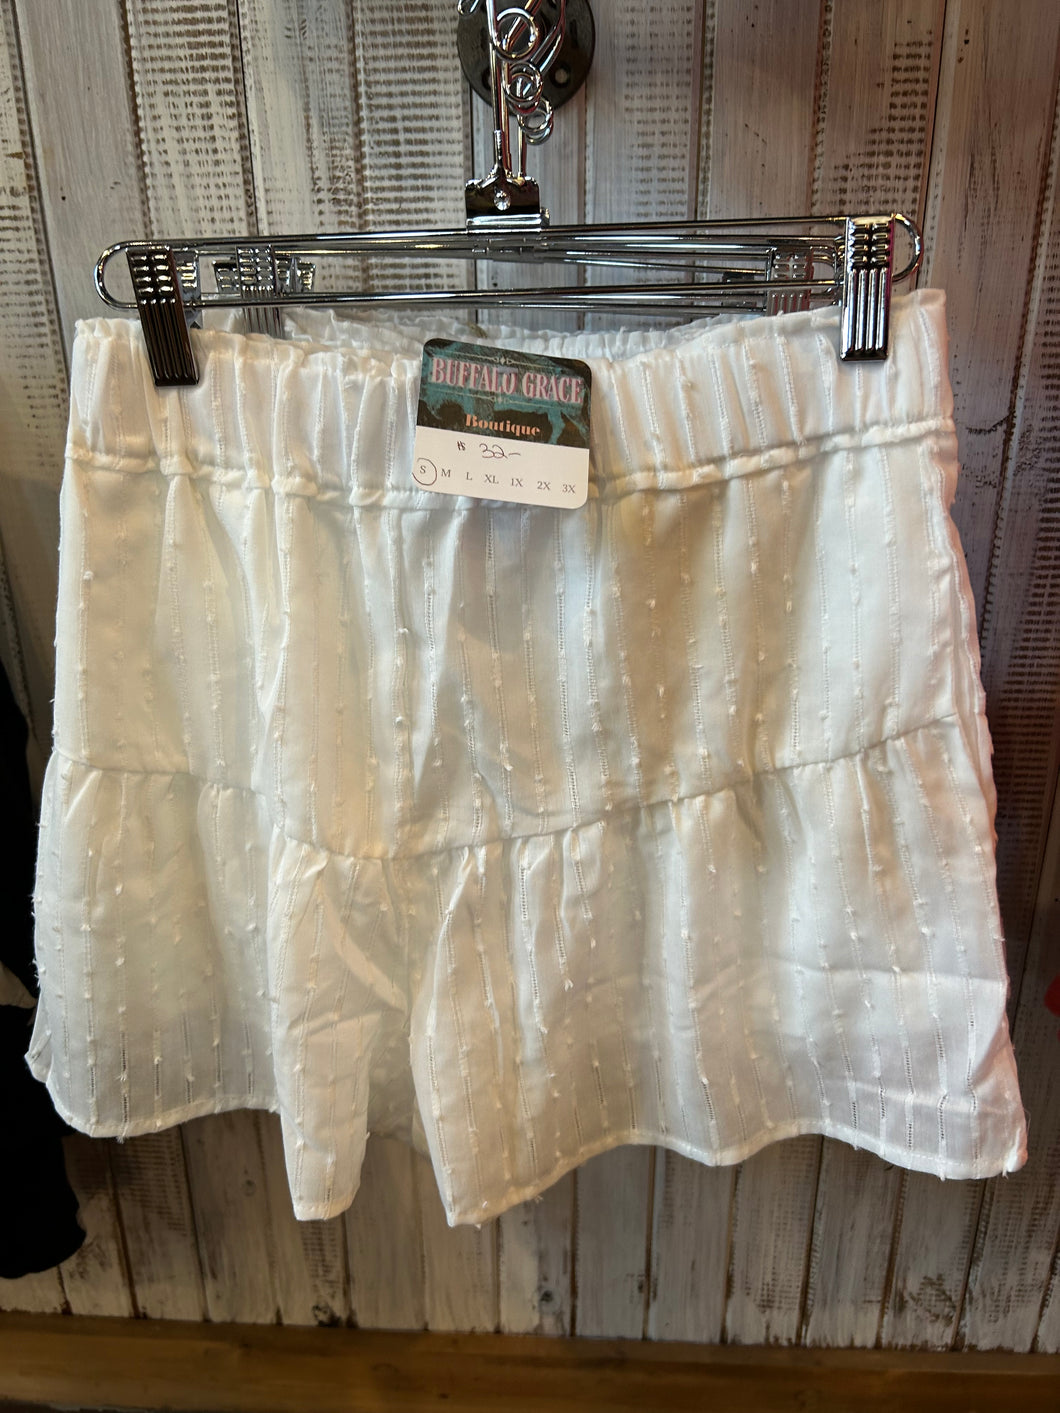 Shorts: The summer shorts